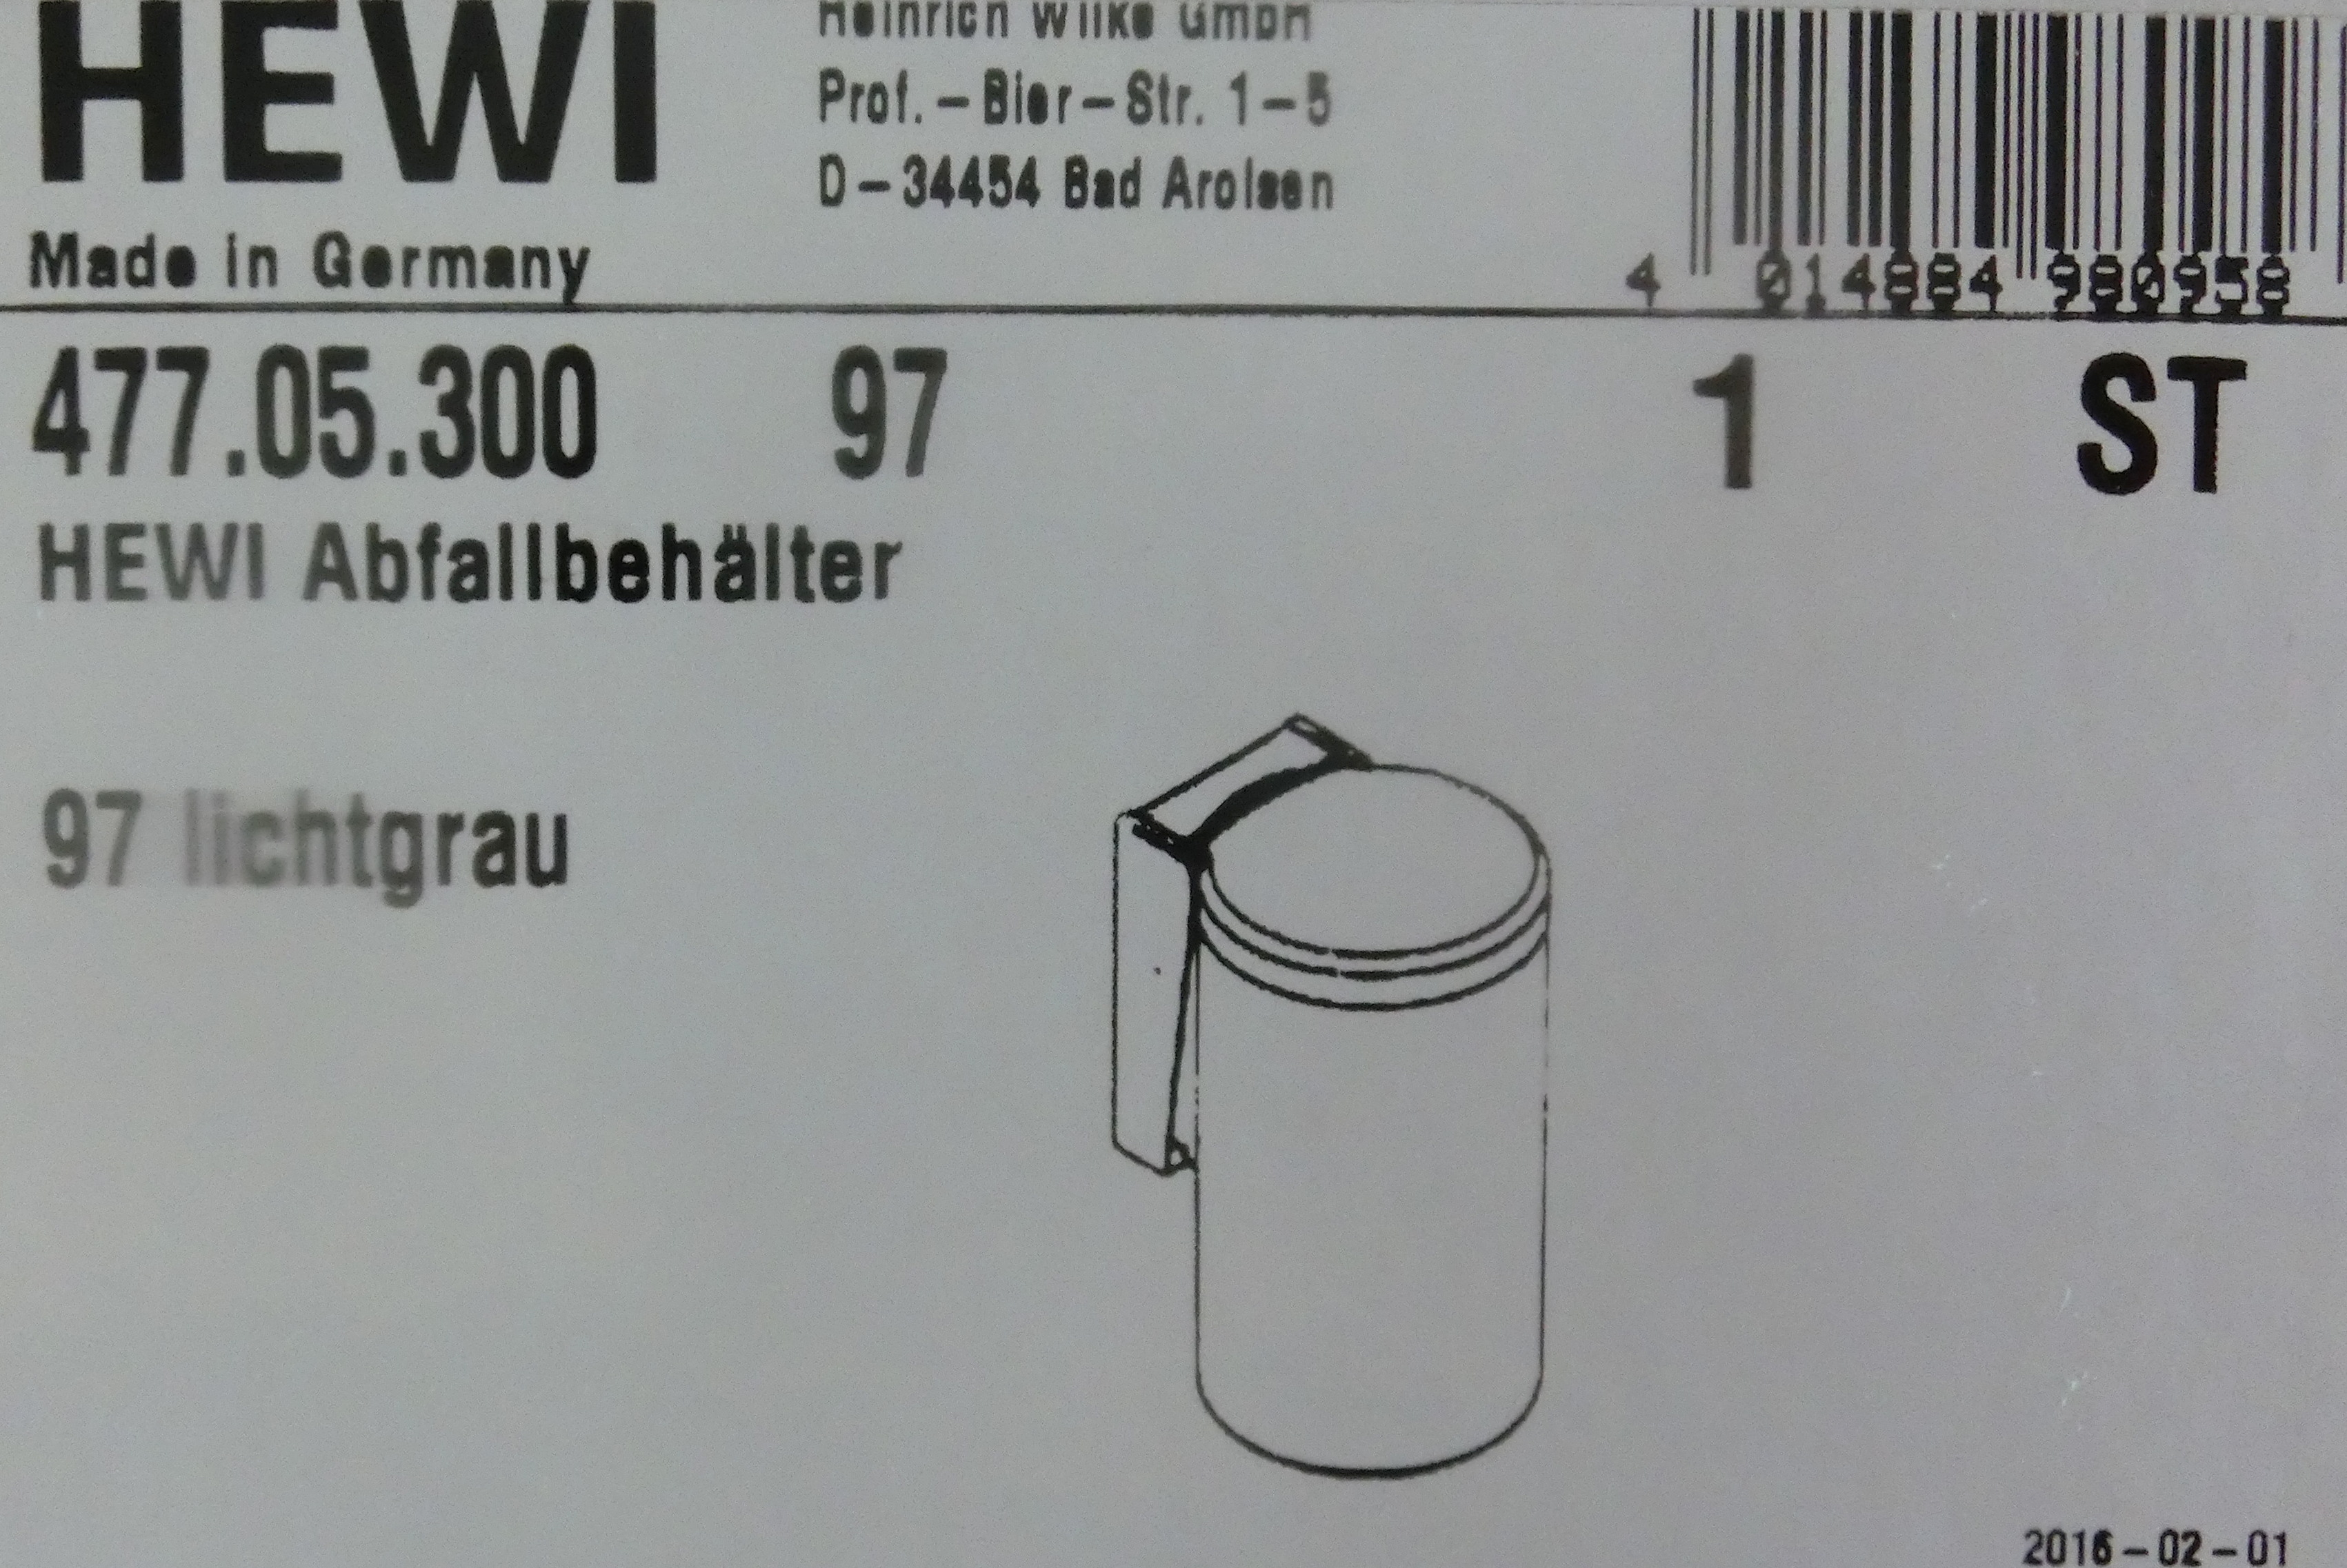 Hewi Serie 477 Abfallbehälter apfelgrün; 477.05.300-74 